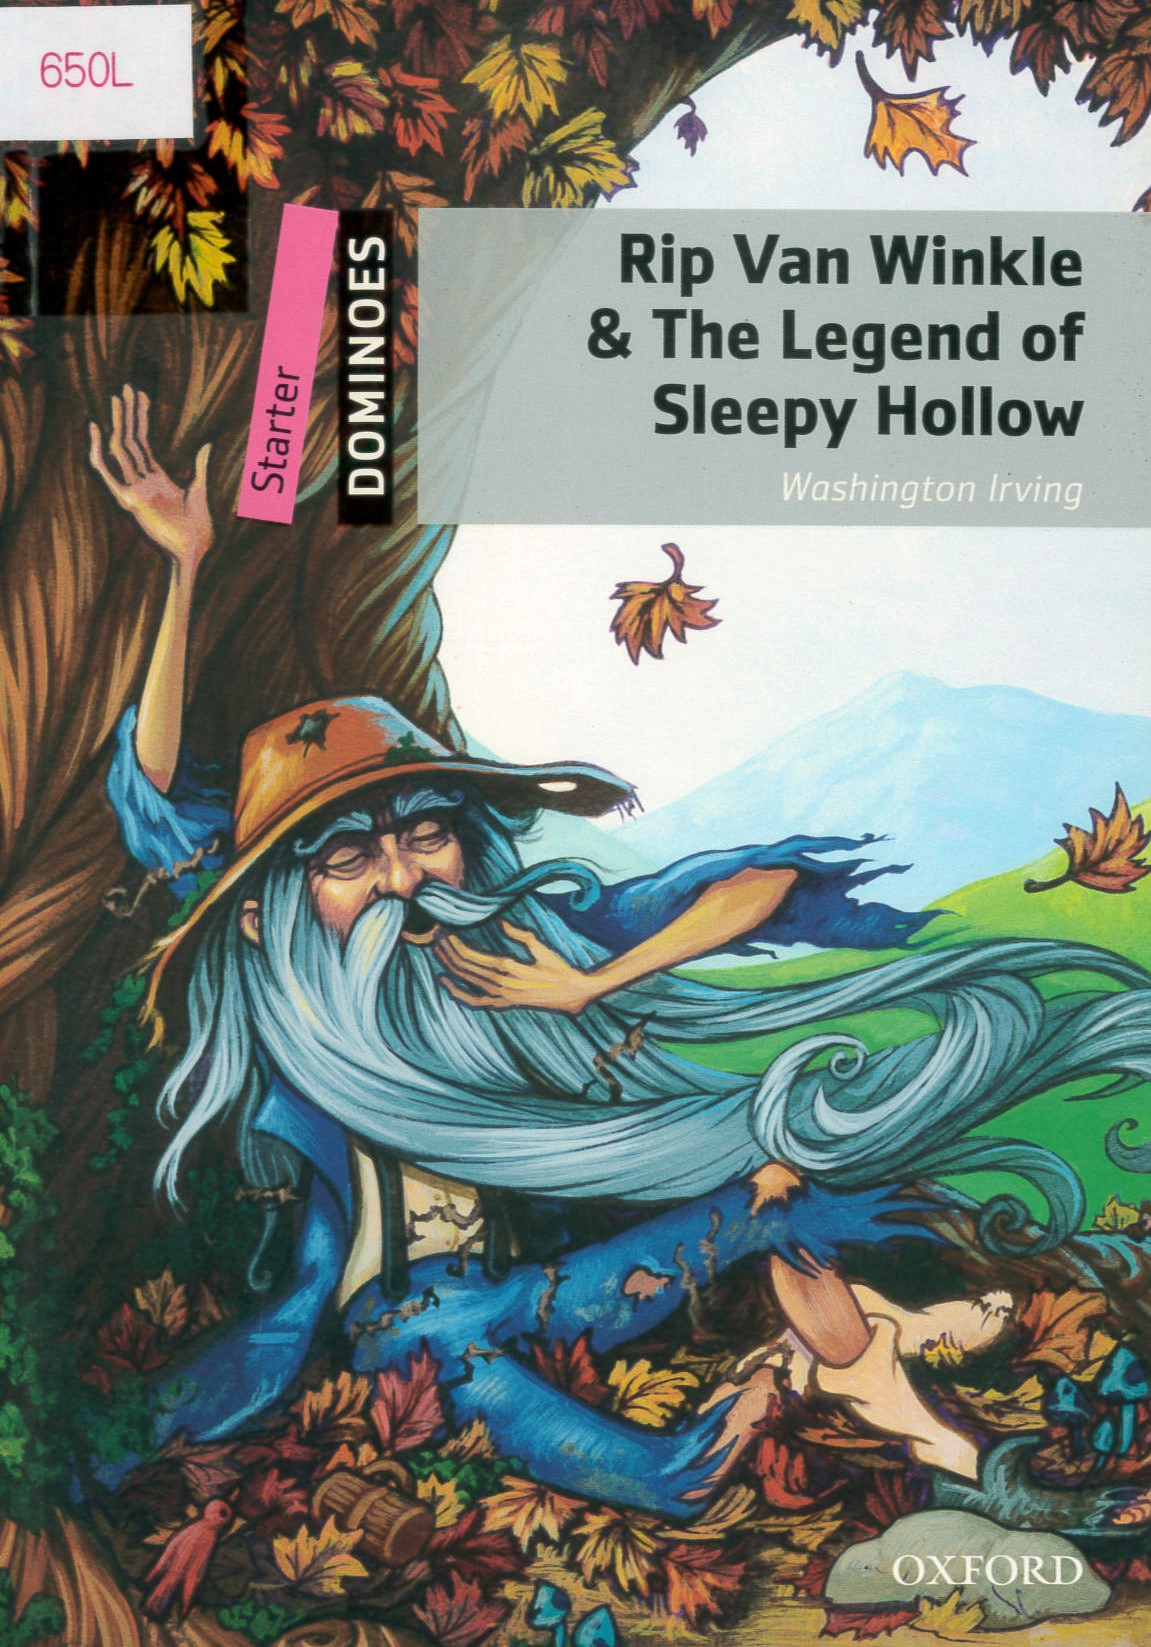 Rip Van Winkle and the legend of sleepy hollow /